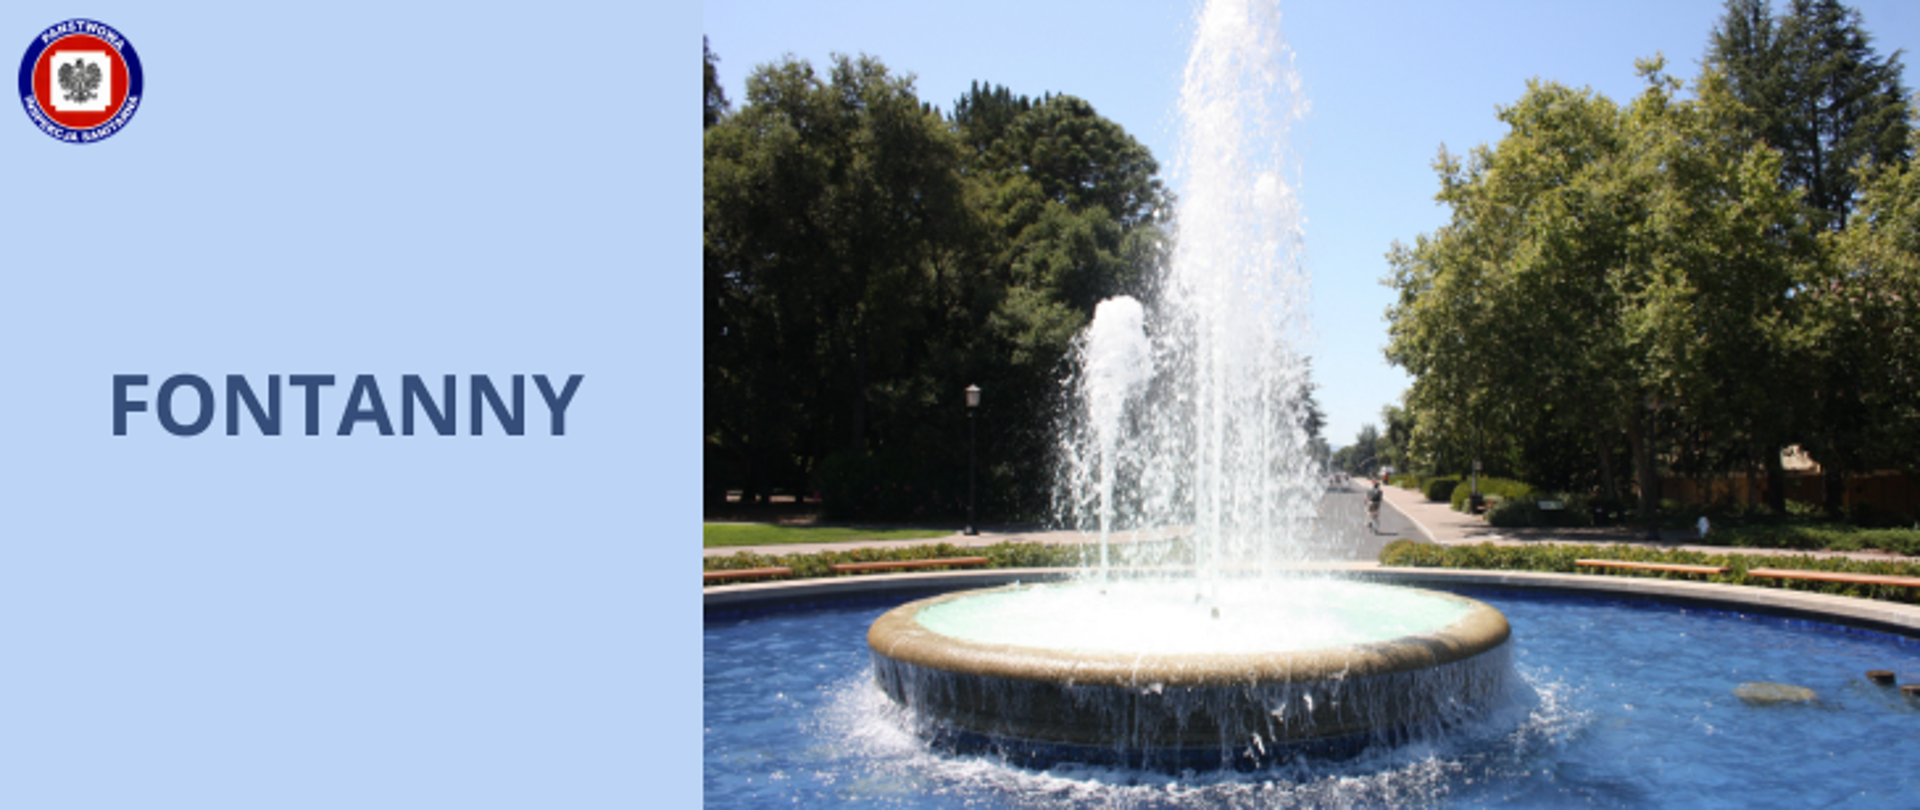 Na tle parku fontanna z tryskającą wodą. Po lewej stronie na niebieskim tle napis fontanny. W lewym górnym rogu logo Państwowej Inspekcji Sanitarnej.